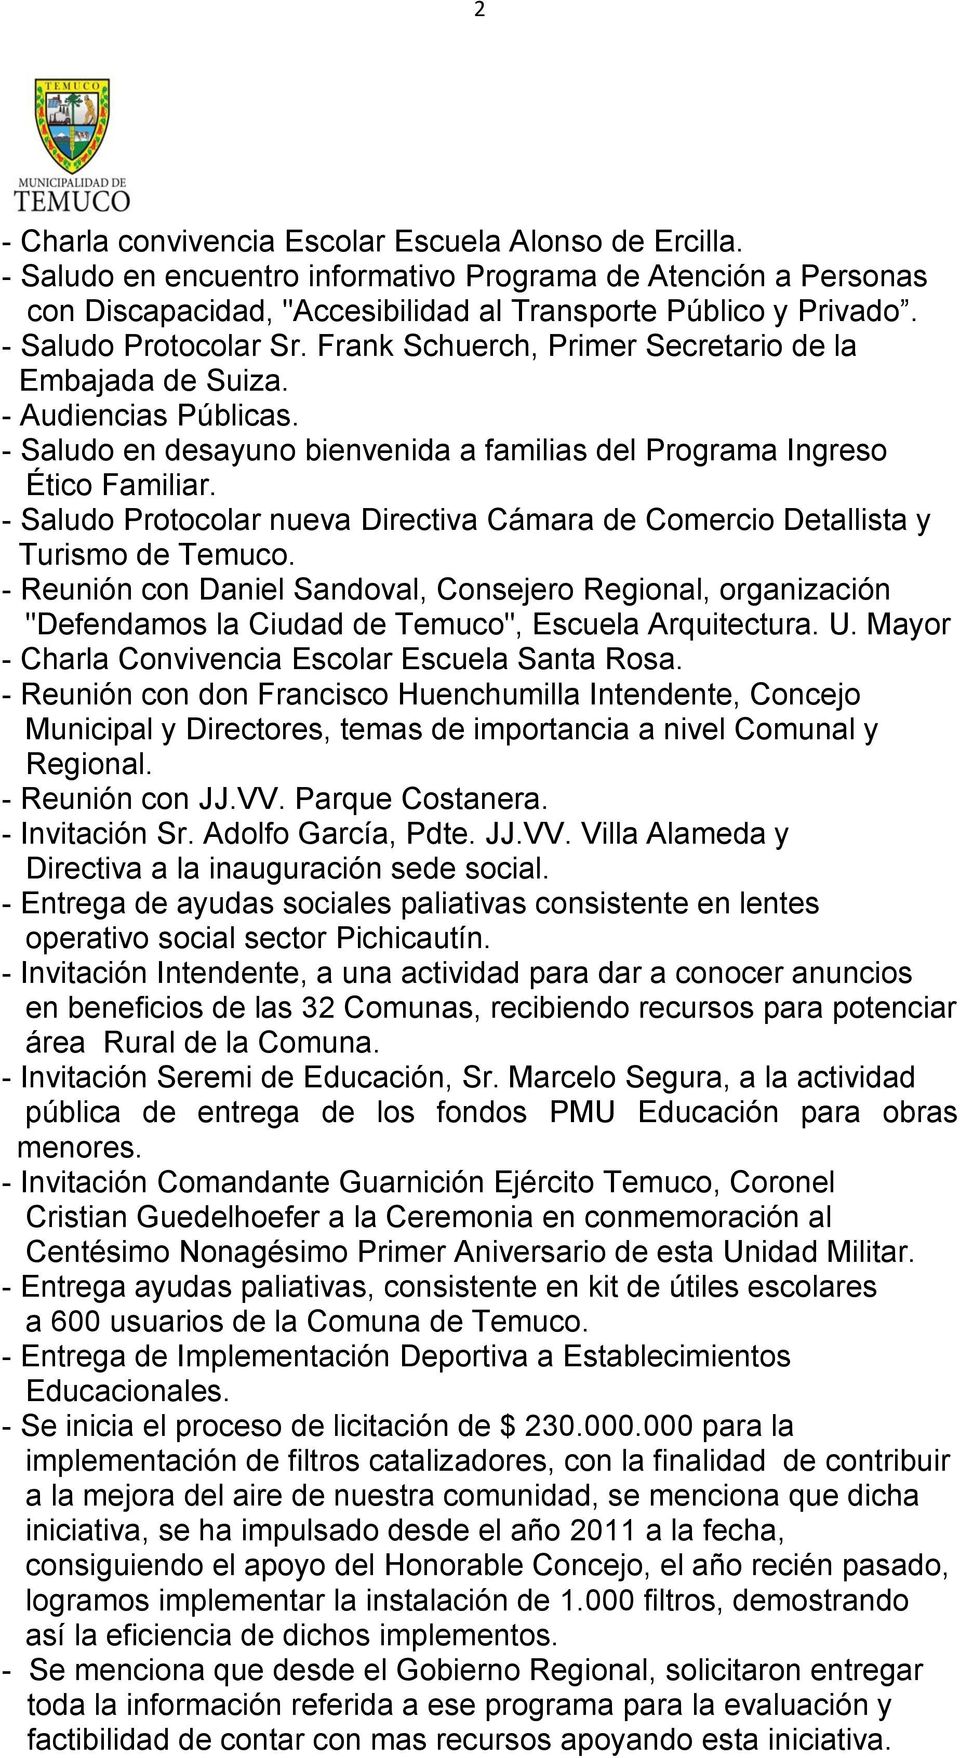 - Saludo Protocolar nueva Directiva Cámara de Comercio Detallista y Turismo de Temuco.